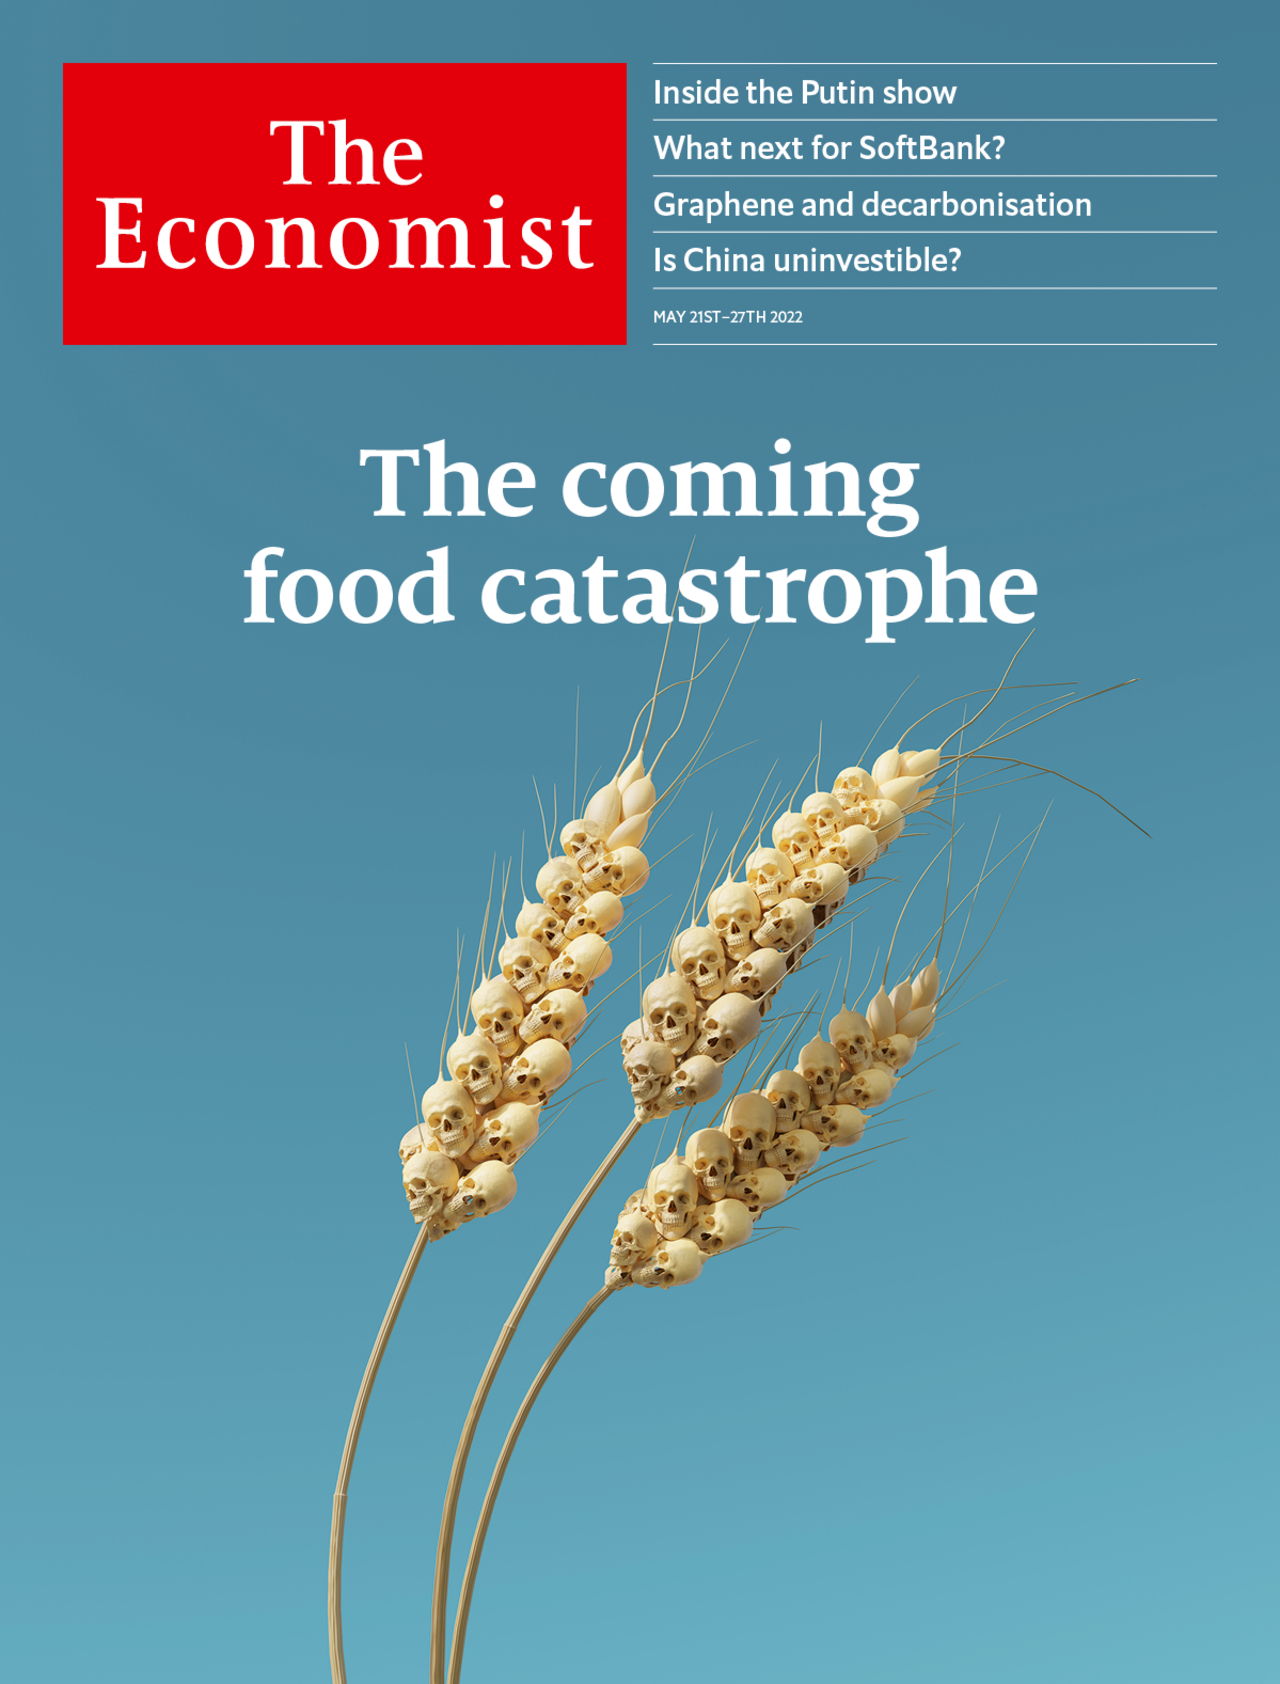 La reciente portada de The Economist alerta de una "catástrofe alimentaria por venir"